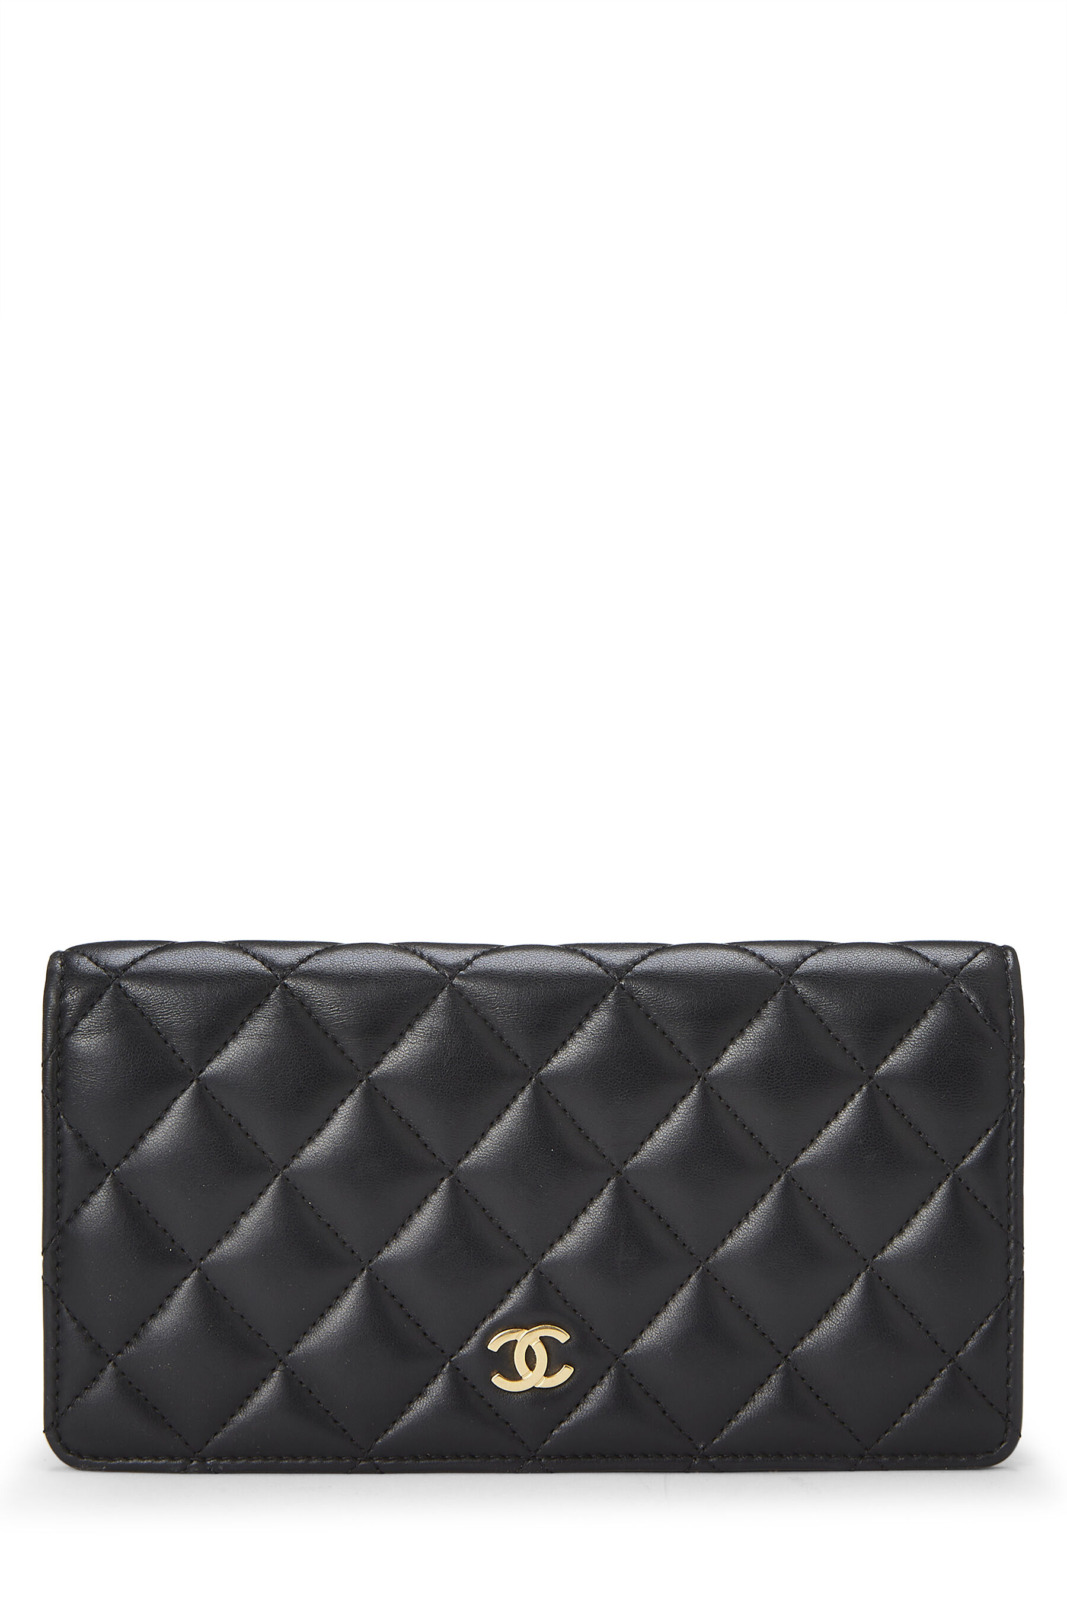 WGACA - Ladies Wallet in Black by Chanel GOOFASH